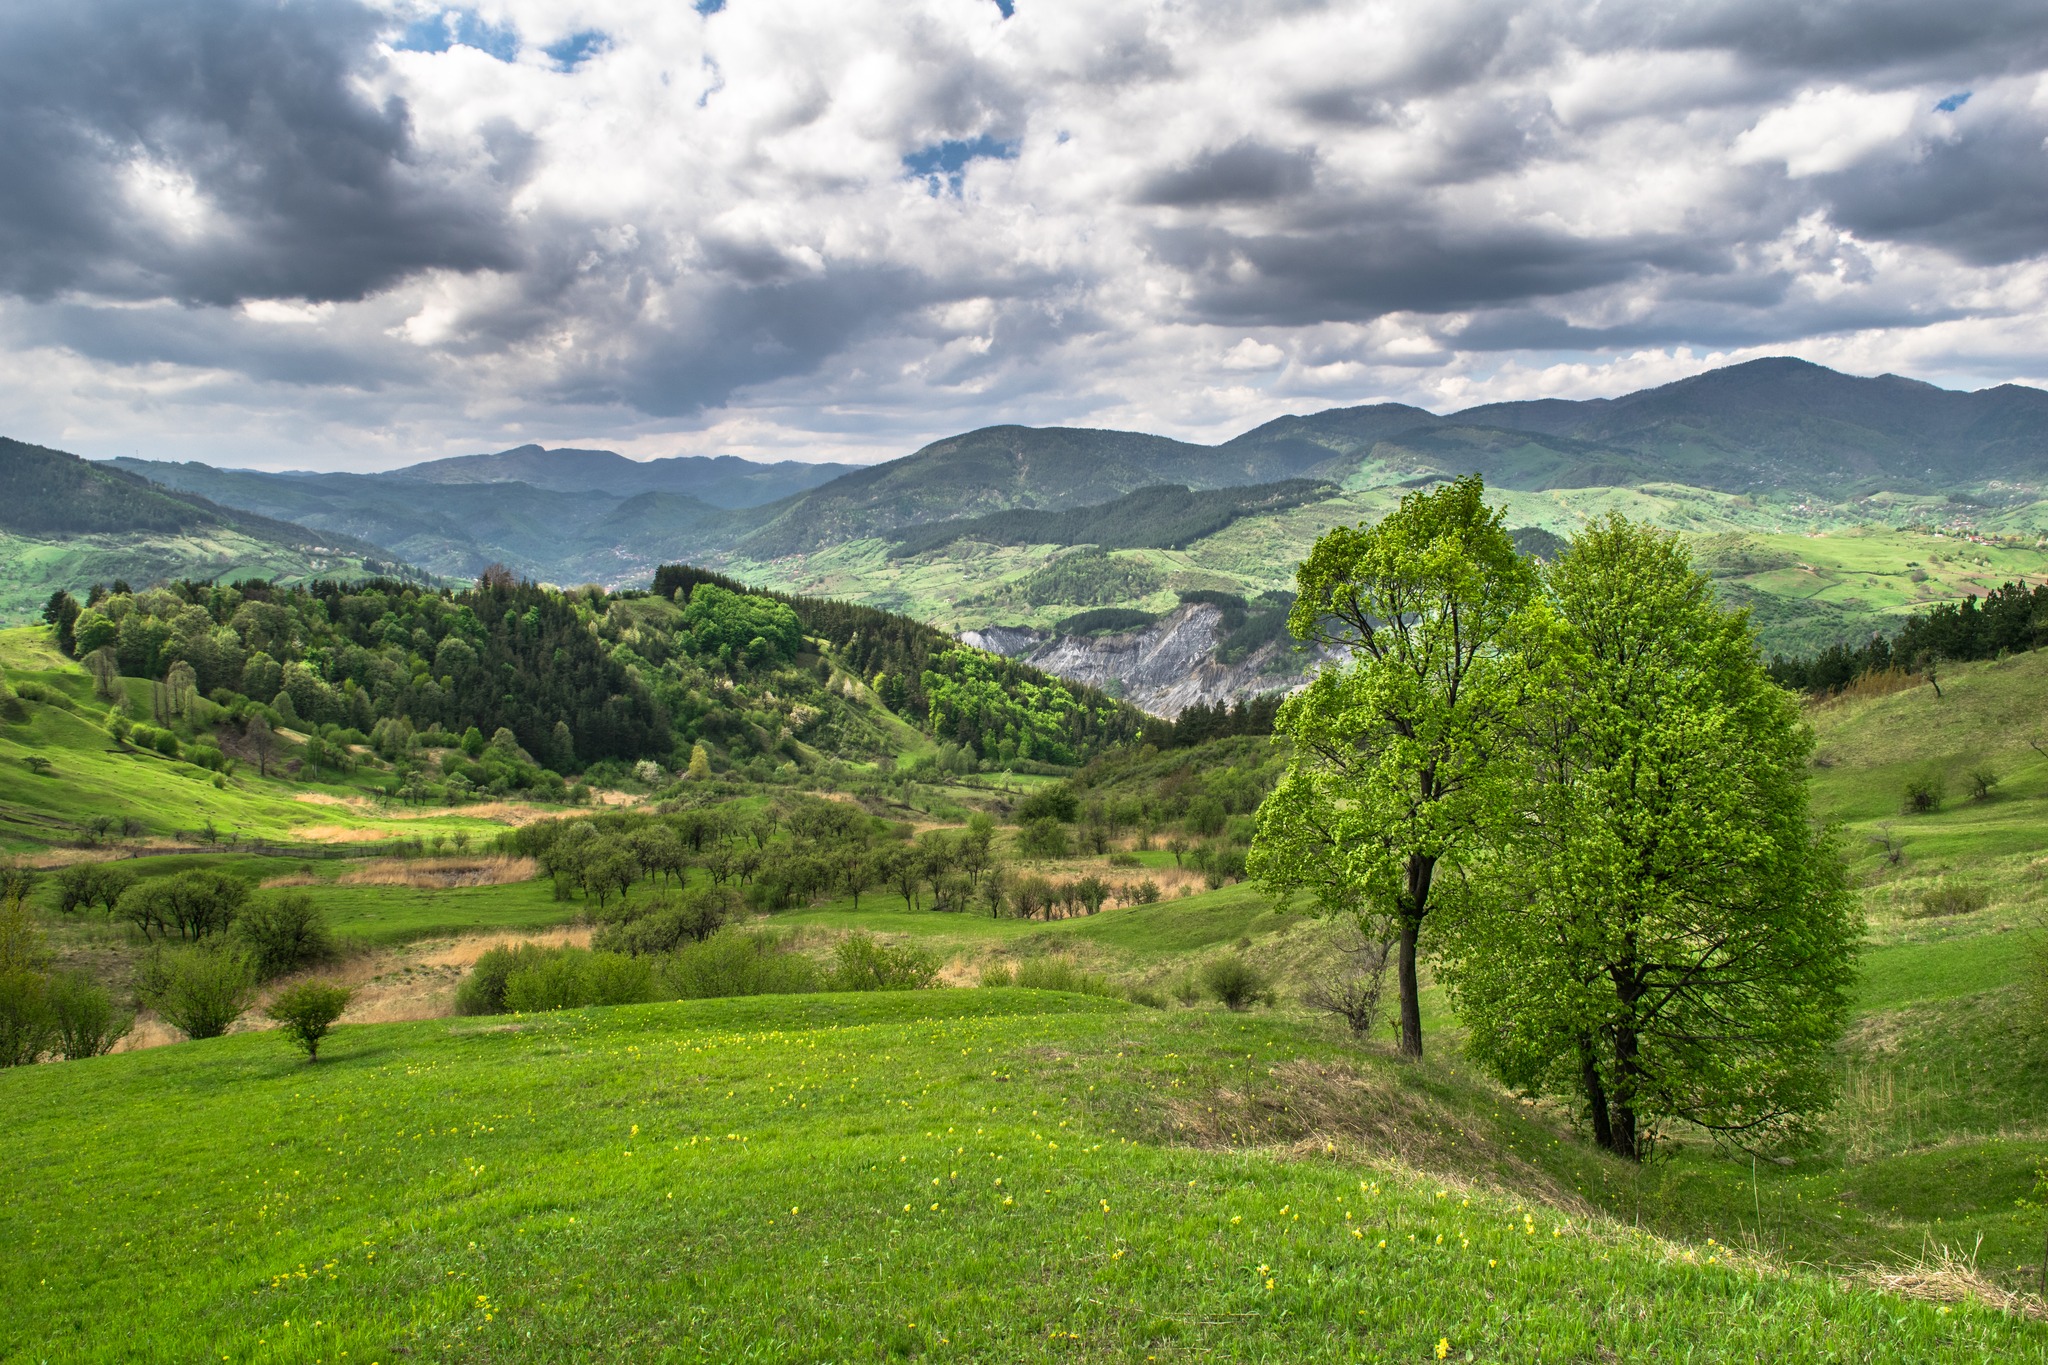 Ținutul Buzăului, raport favorabil pentru admiterea în rețeaua mondială a geoparcurilor UNESCO